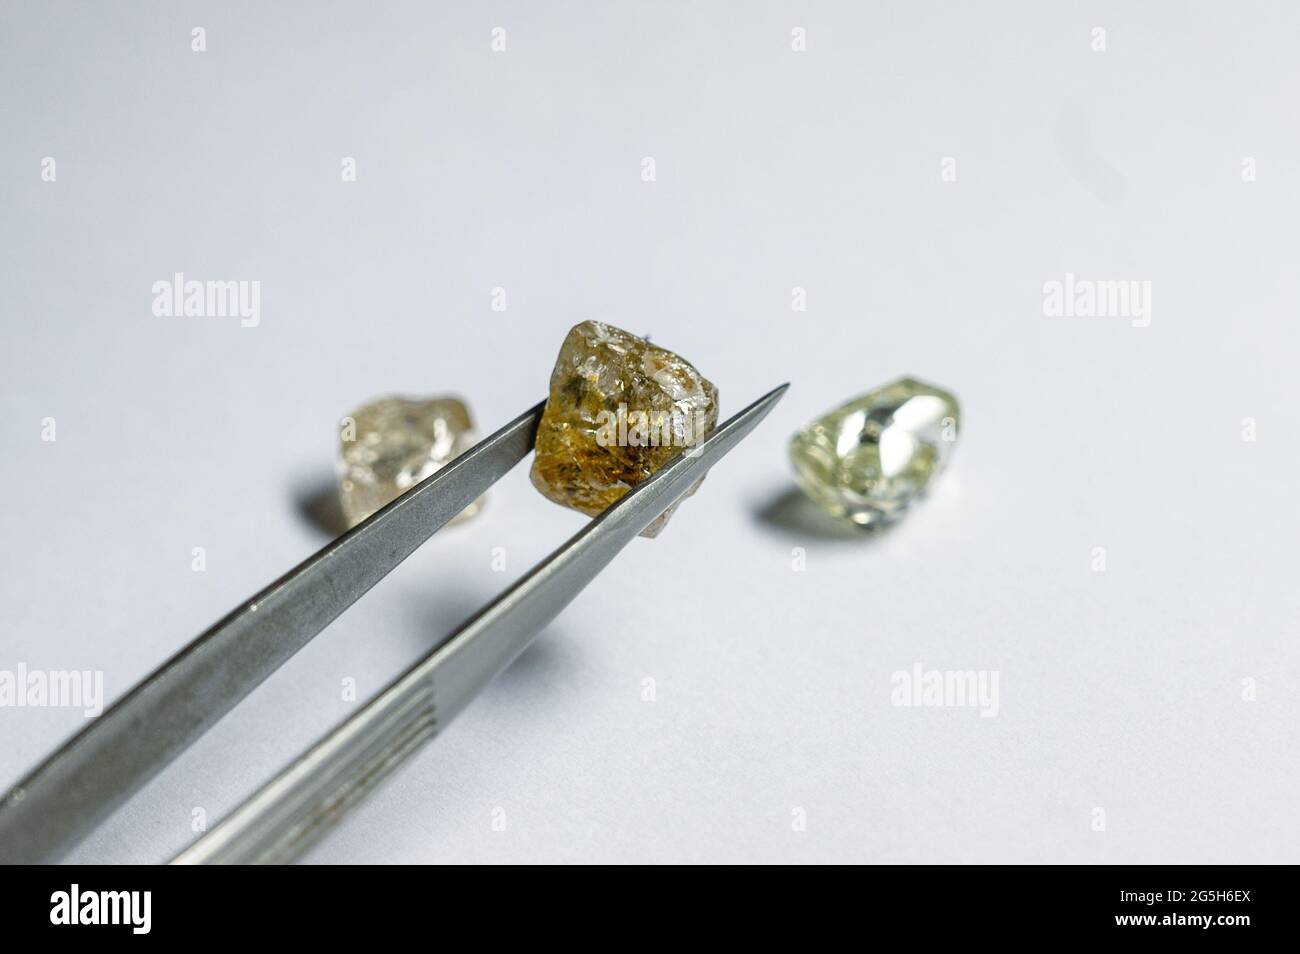 Der farbige Diamant wird mit einer Metallpinzette gehalten. Zwei weitere Edelsteine liegen in der Nähe Stockfoto